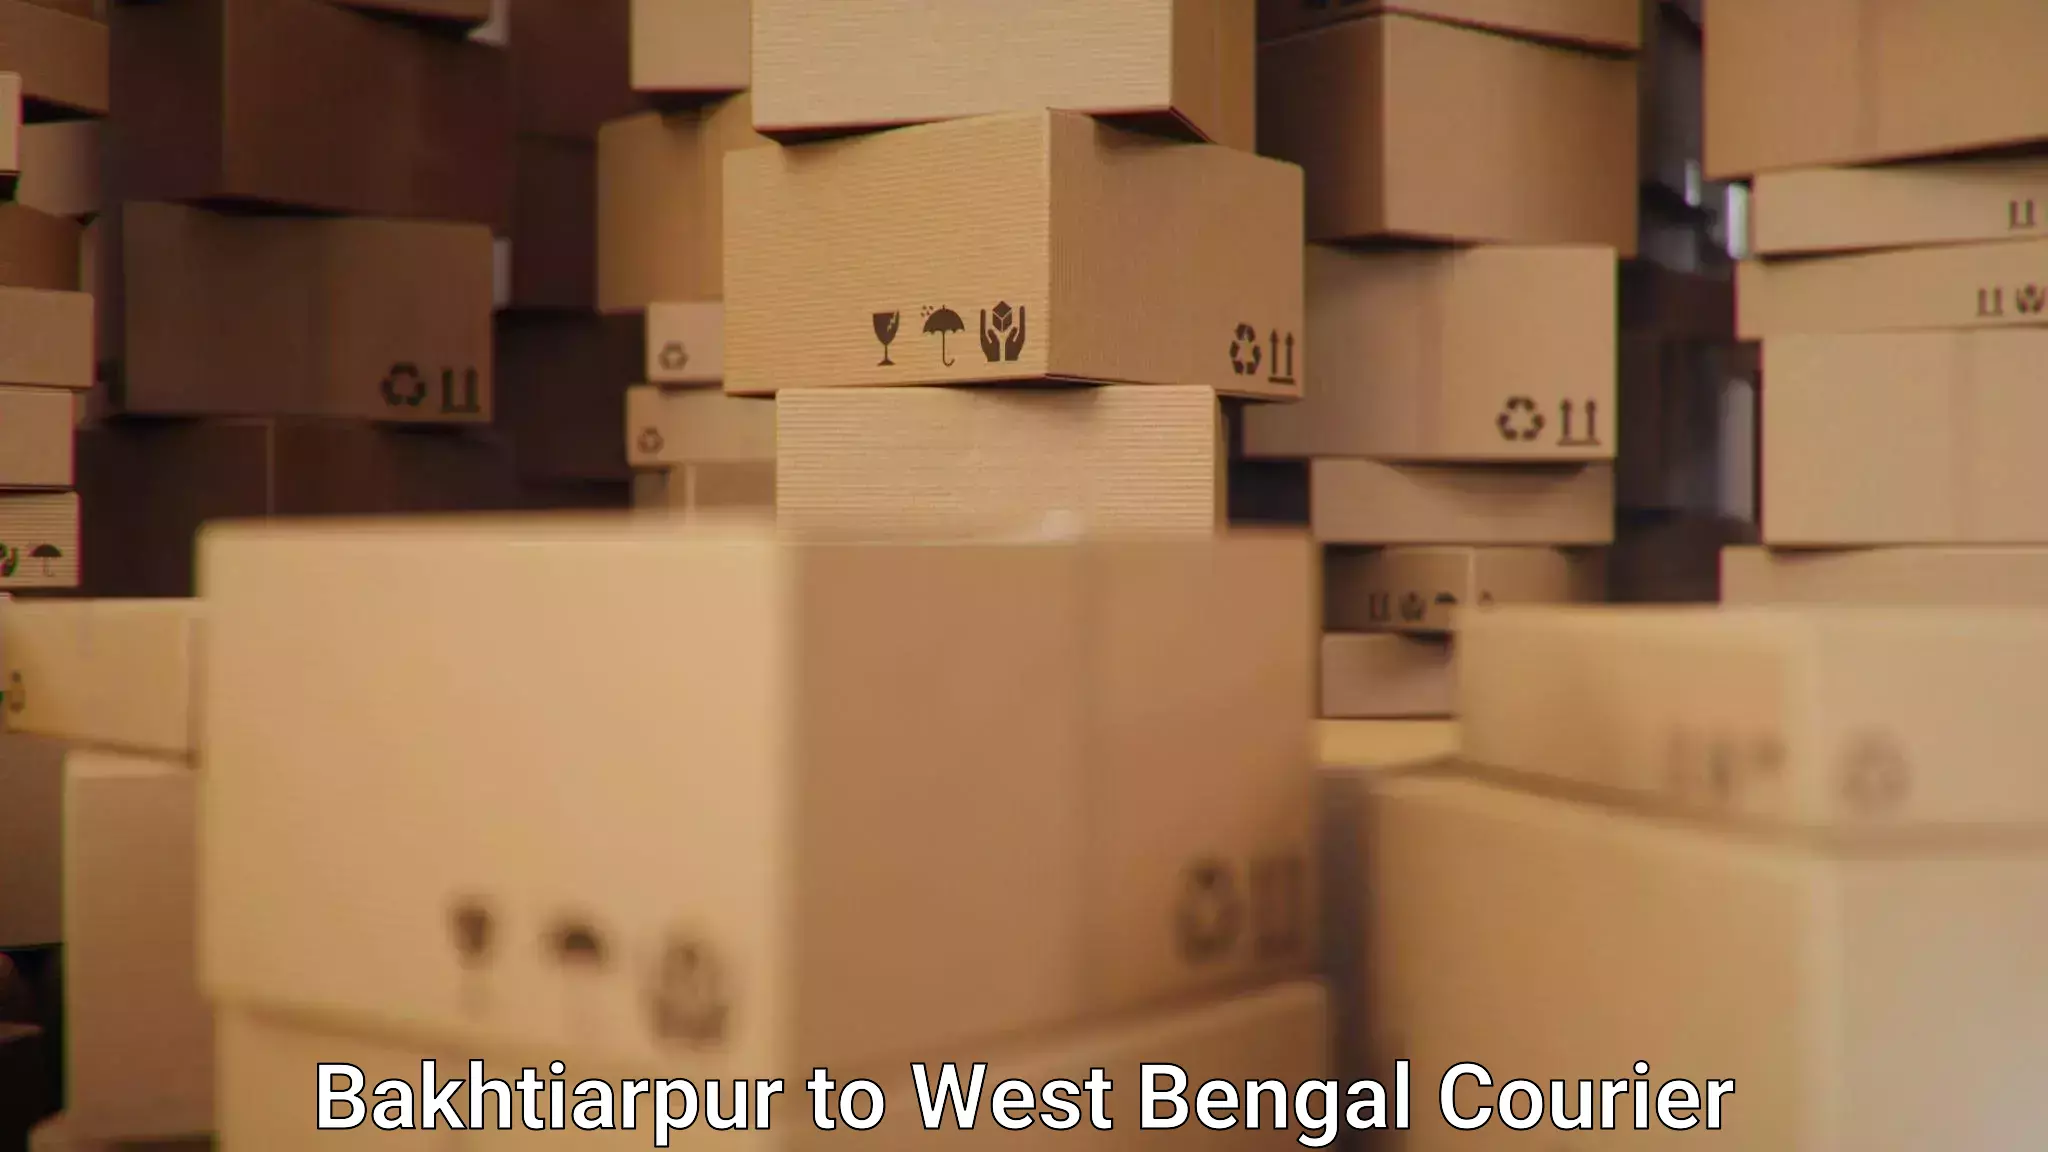 Smart logistics strategies Bakhtiarpur to Raghunathpur